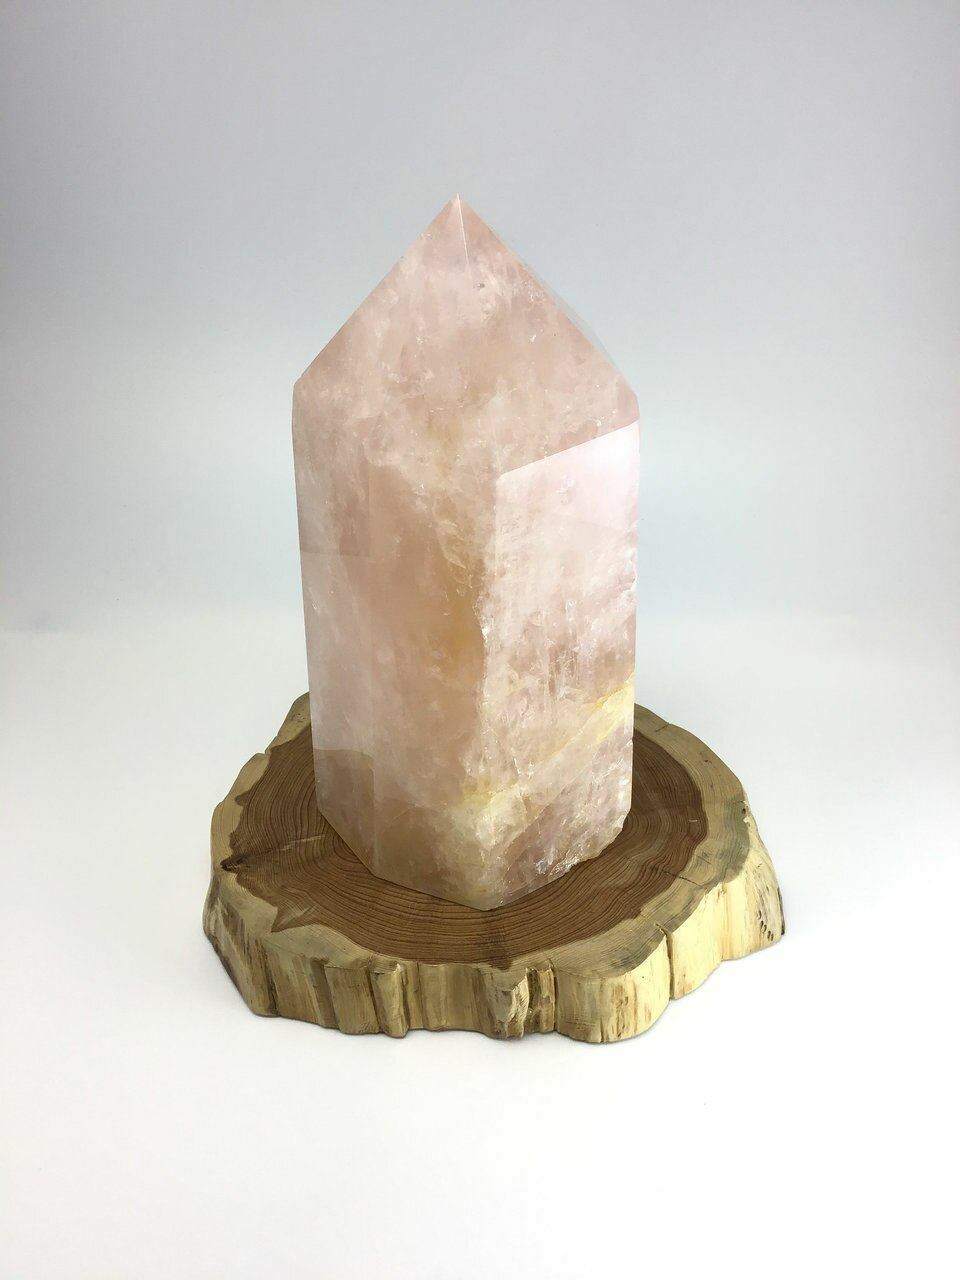 XL Polished Pink Rose Quartz Obelisk 10.8 in Natural Crystal Tower Point